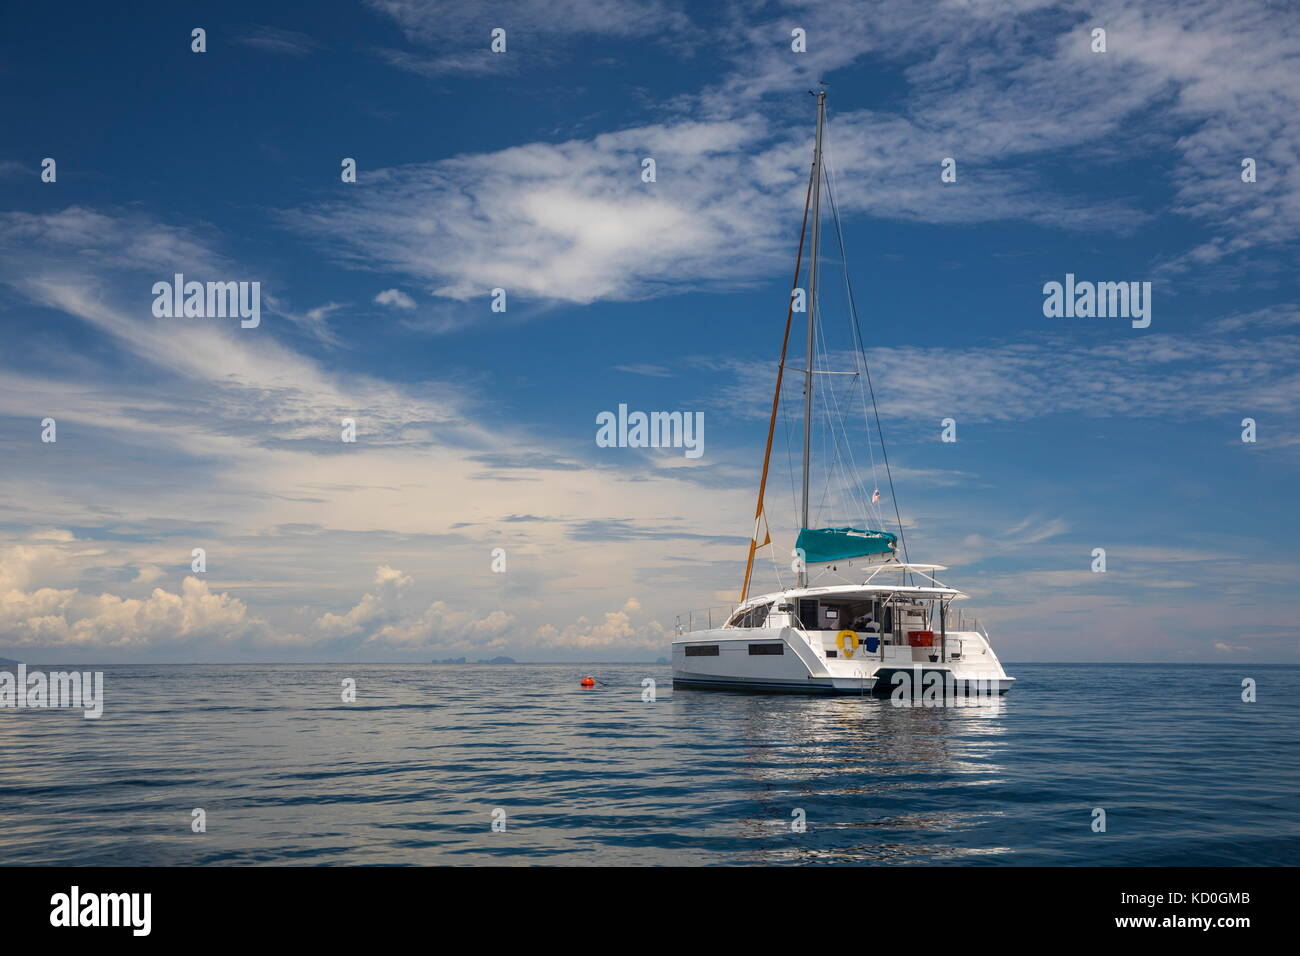 Yacht sailing on sea, Ban Koh Lanta, Krabi, Thailand, Asia Stock Photo